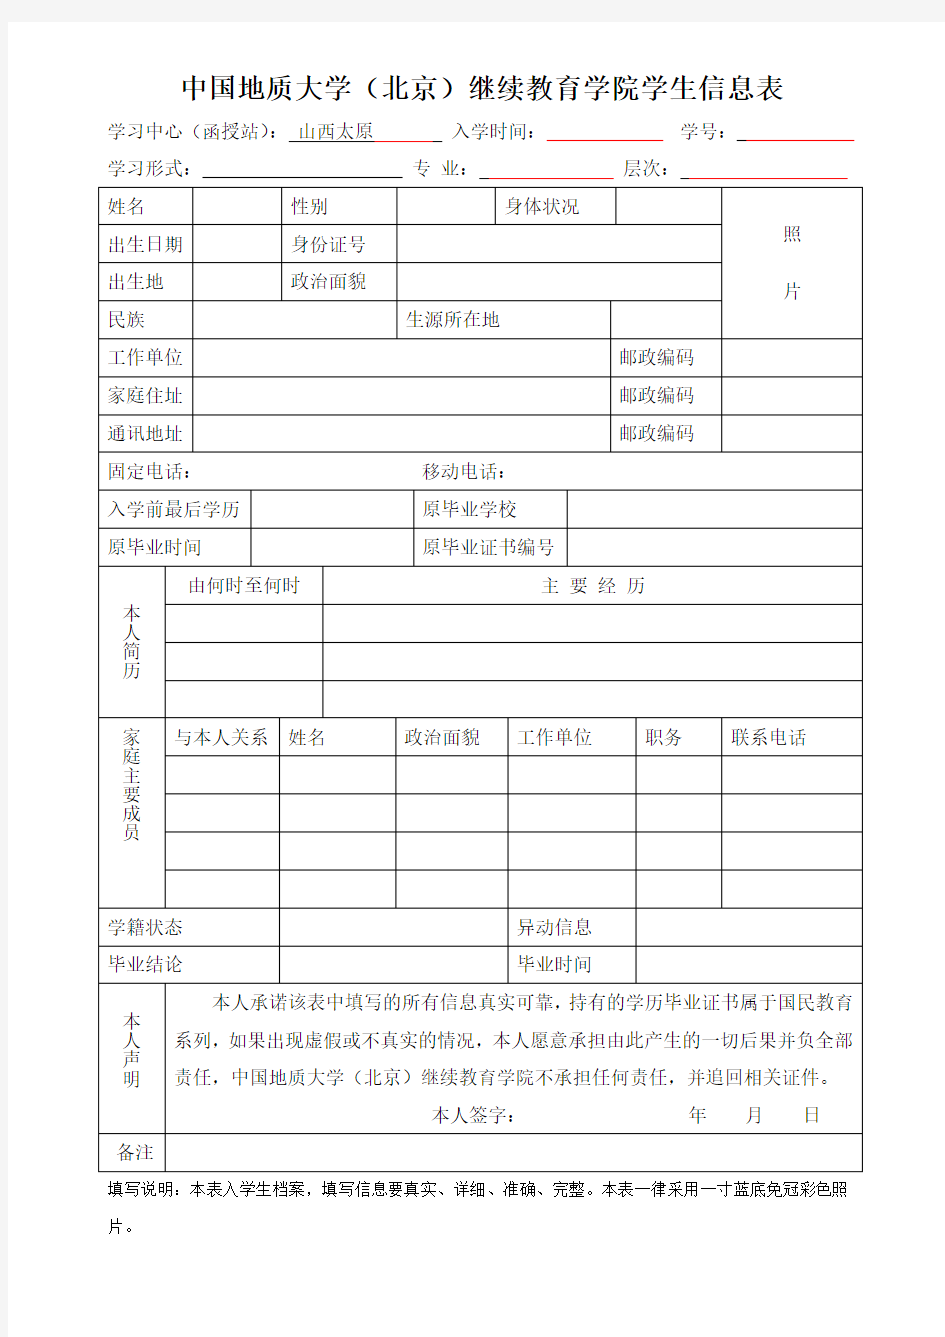 中国地质大学(北京)继续教育学院学生信息表